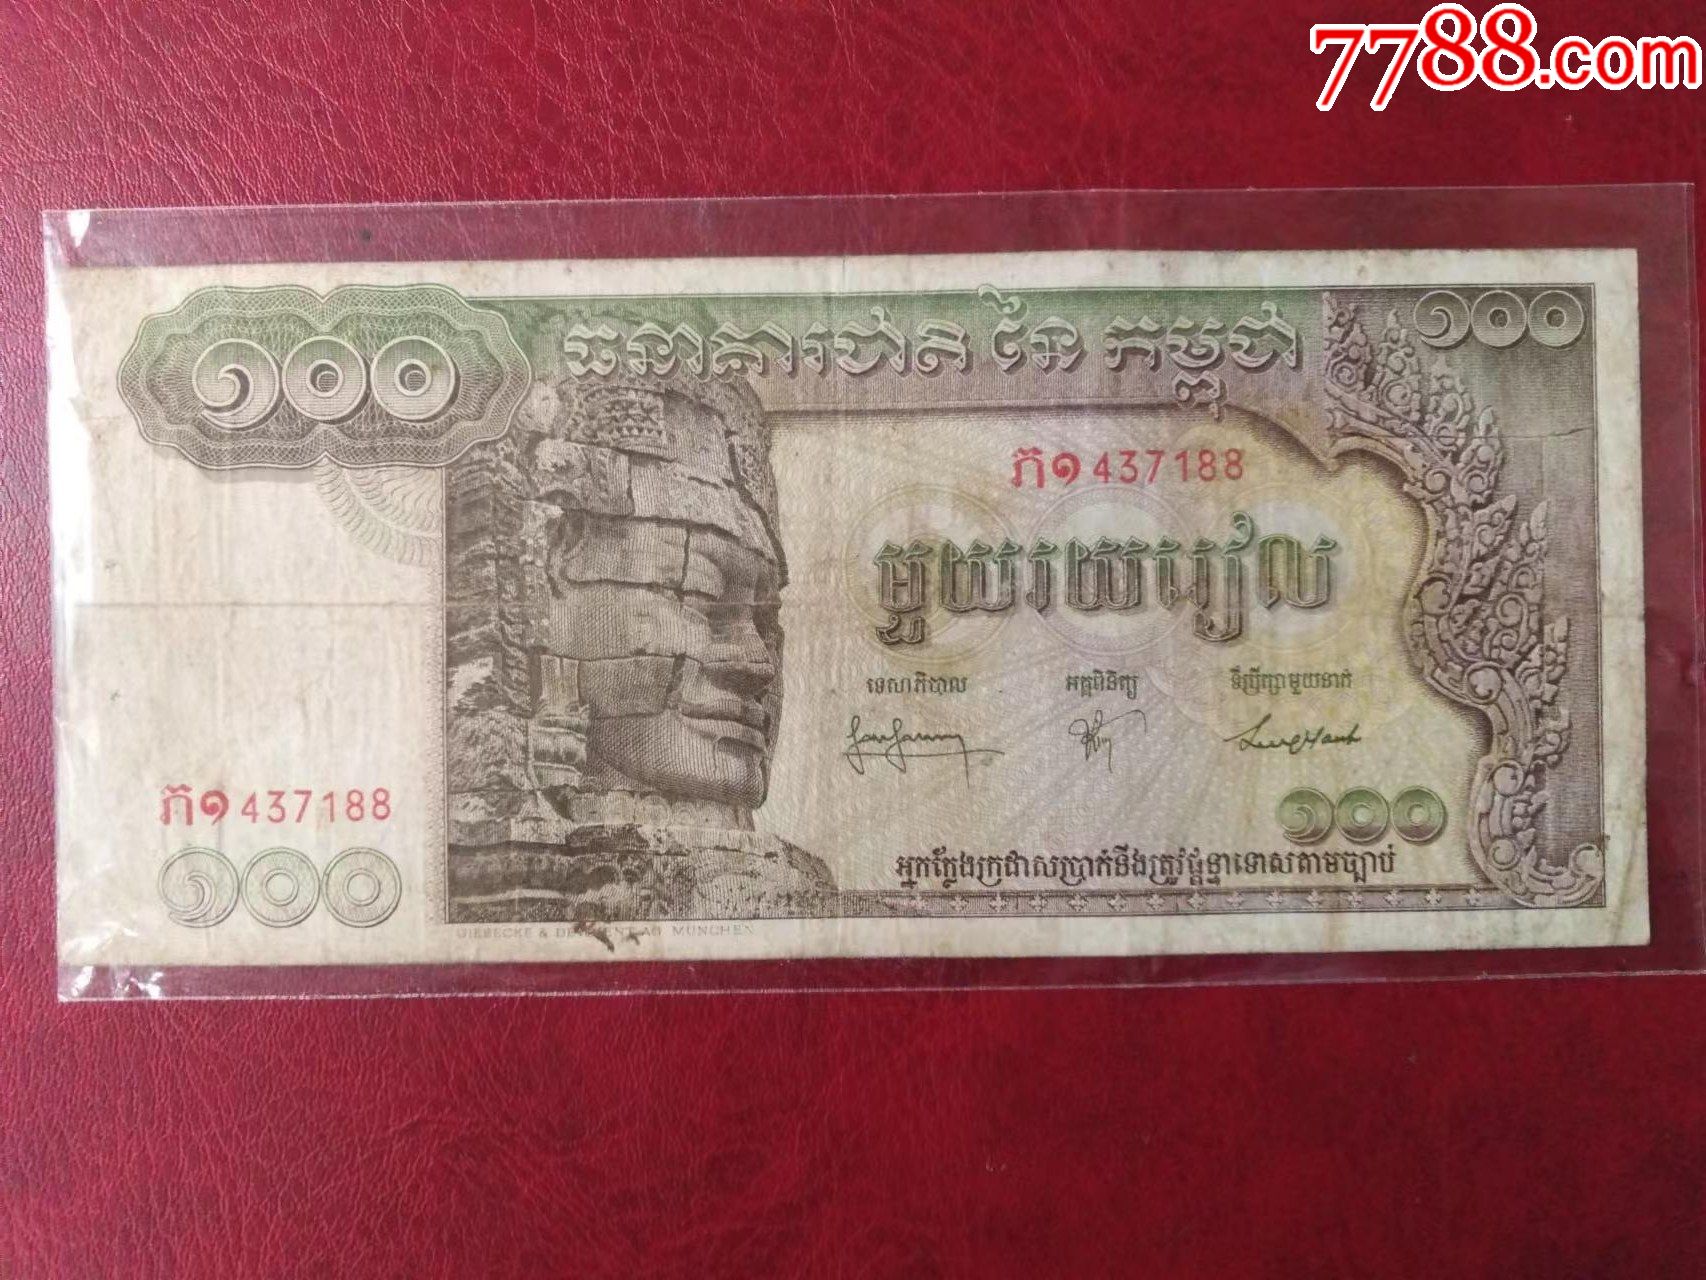 柬埔寨2000纸币图片,柬埔寨币9000元图片 - 伤感说说吧